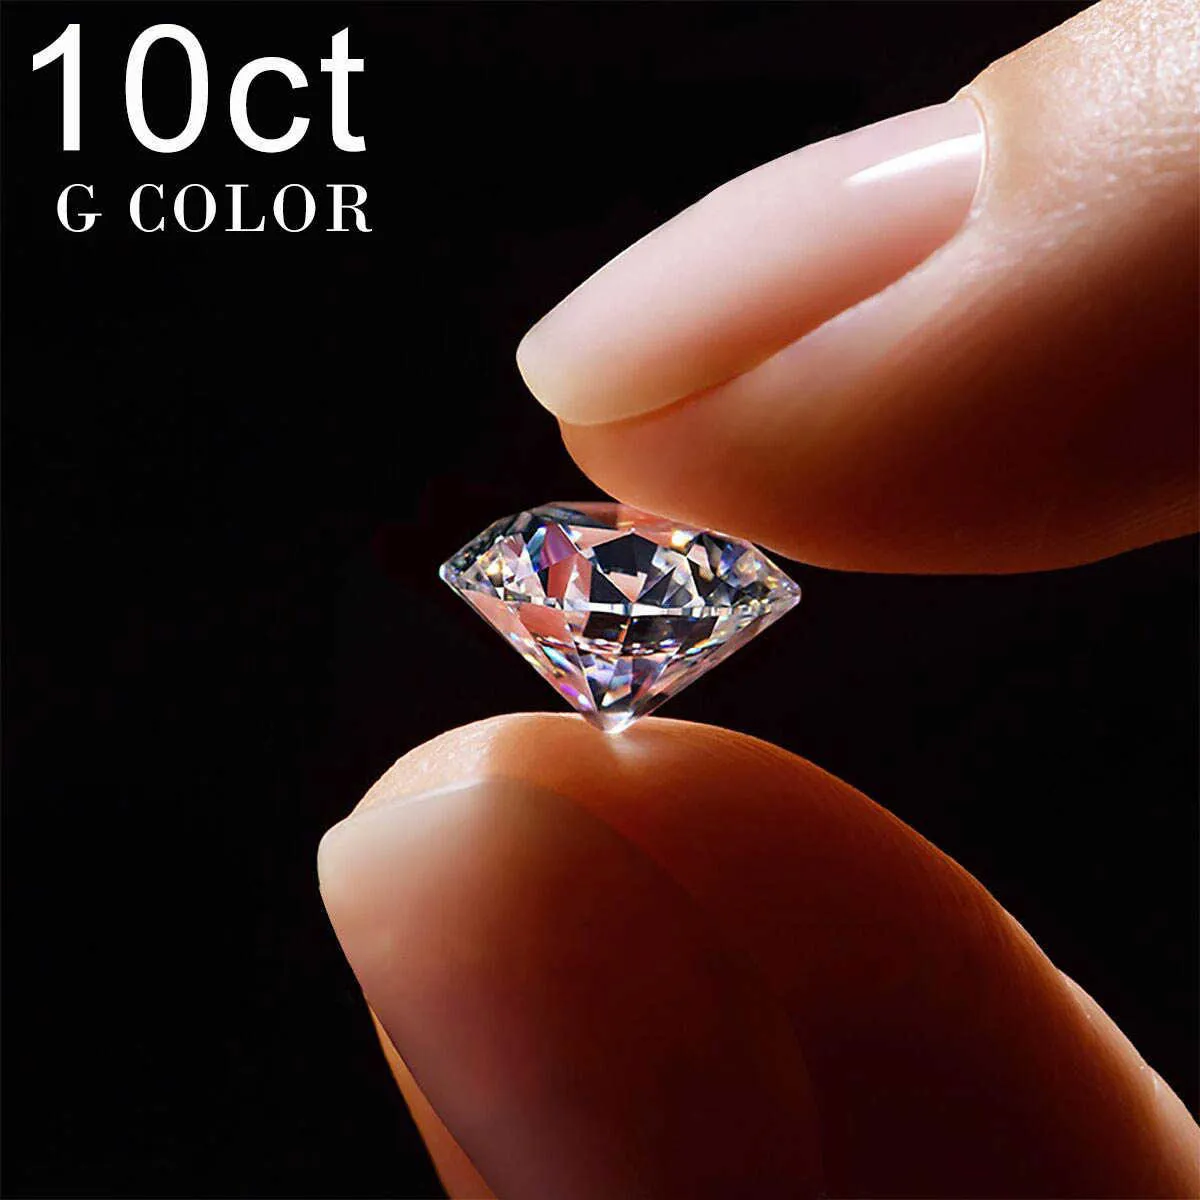 10ct 14mm g色本物のゆるい宝石不振MoissaniteストーンパスダイヤモンドテスターGRA証明書8心8矢印ビッグジェムホットH1015